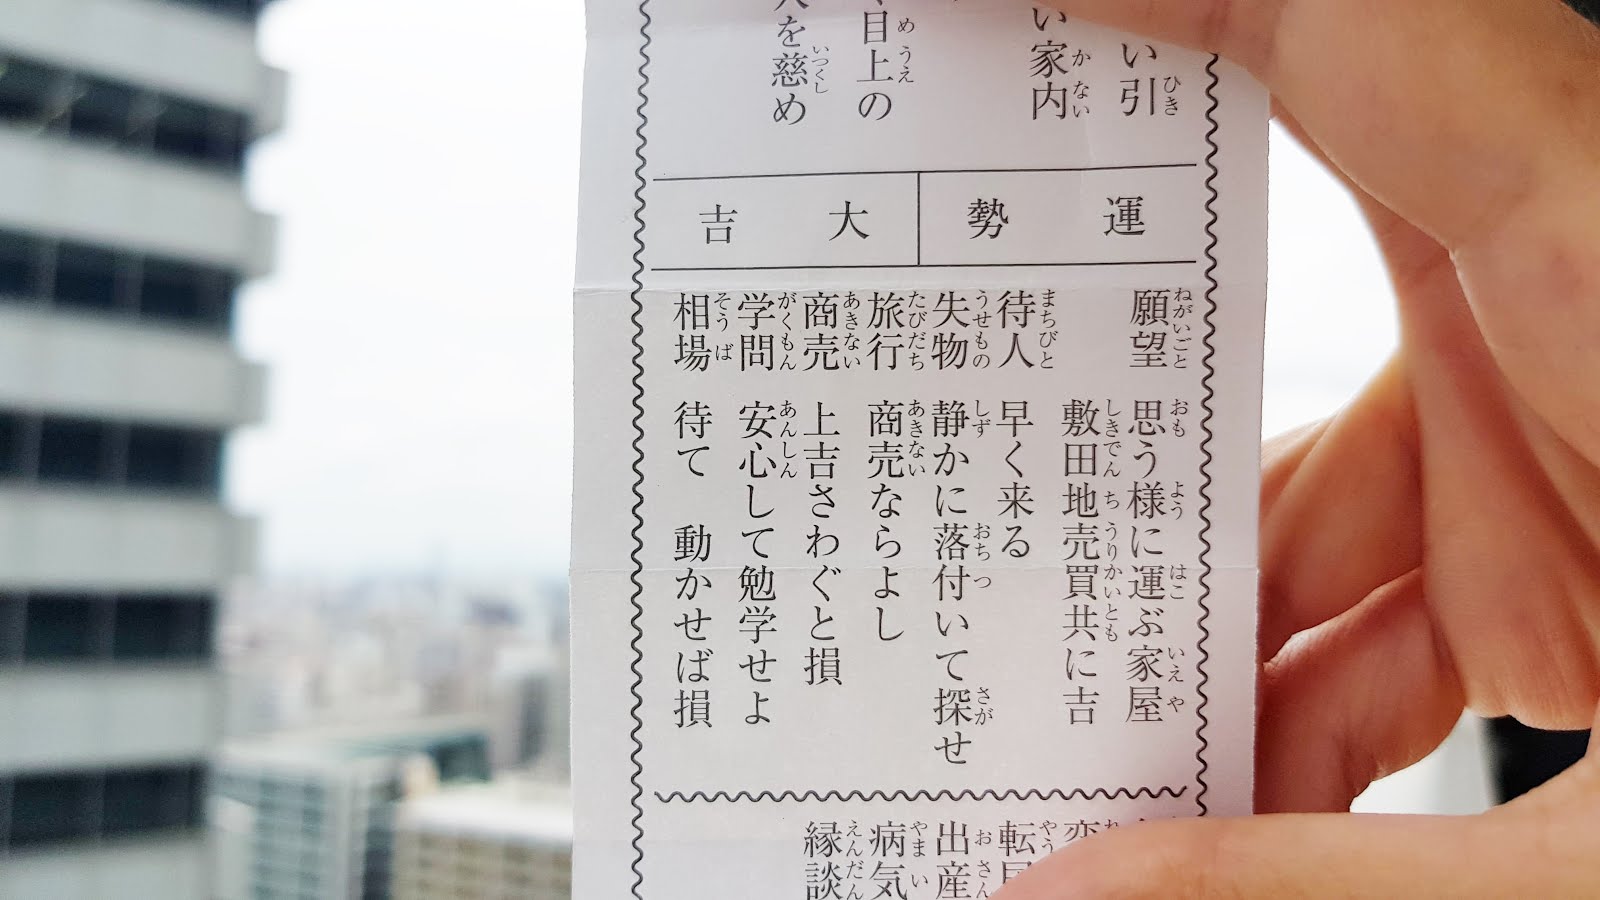 翻譯 學日文 日本神社御神籤 おみくじ 解籤類別的意思 蝦米子 生活筆記本